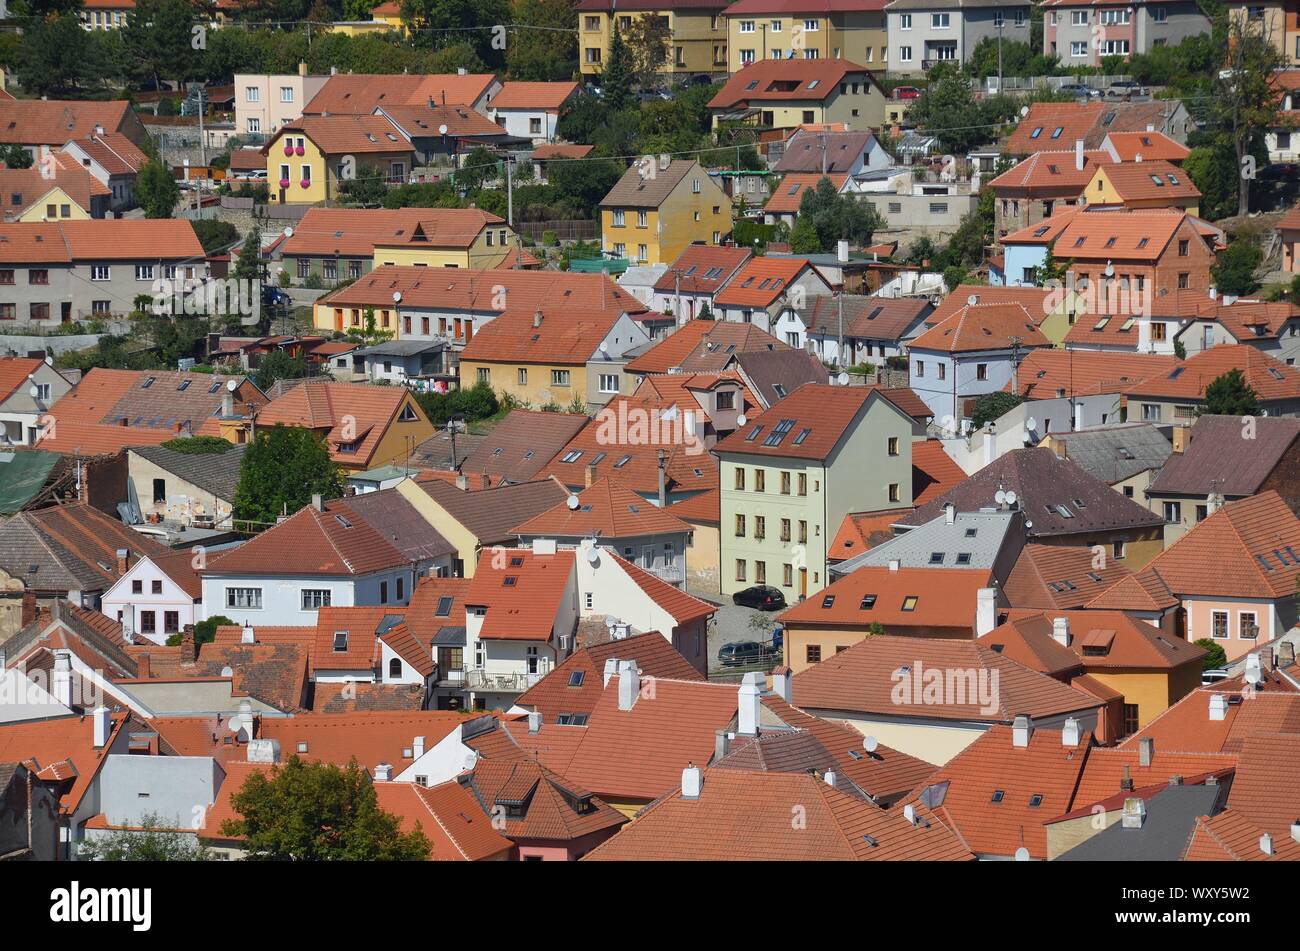 Trebic in Repubblica Ceca, UNESCO Weltkulturerbe: Blick vom Stadtturm auf die Altstadt Foto Stock